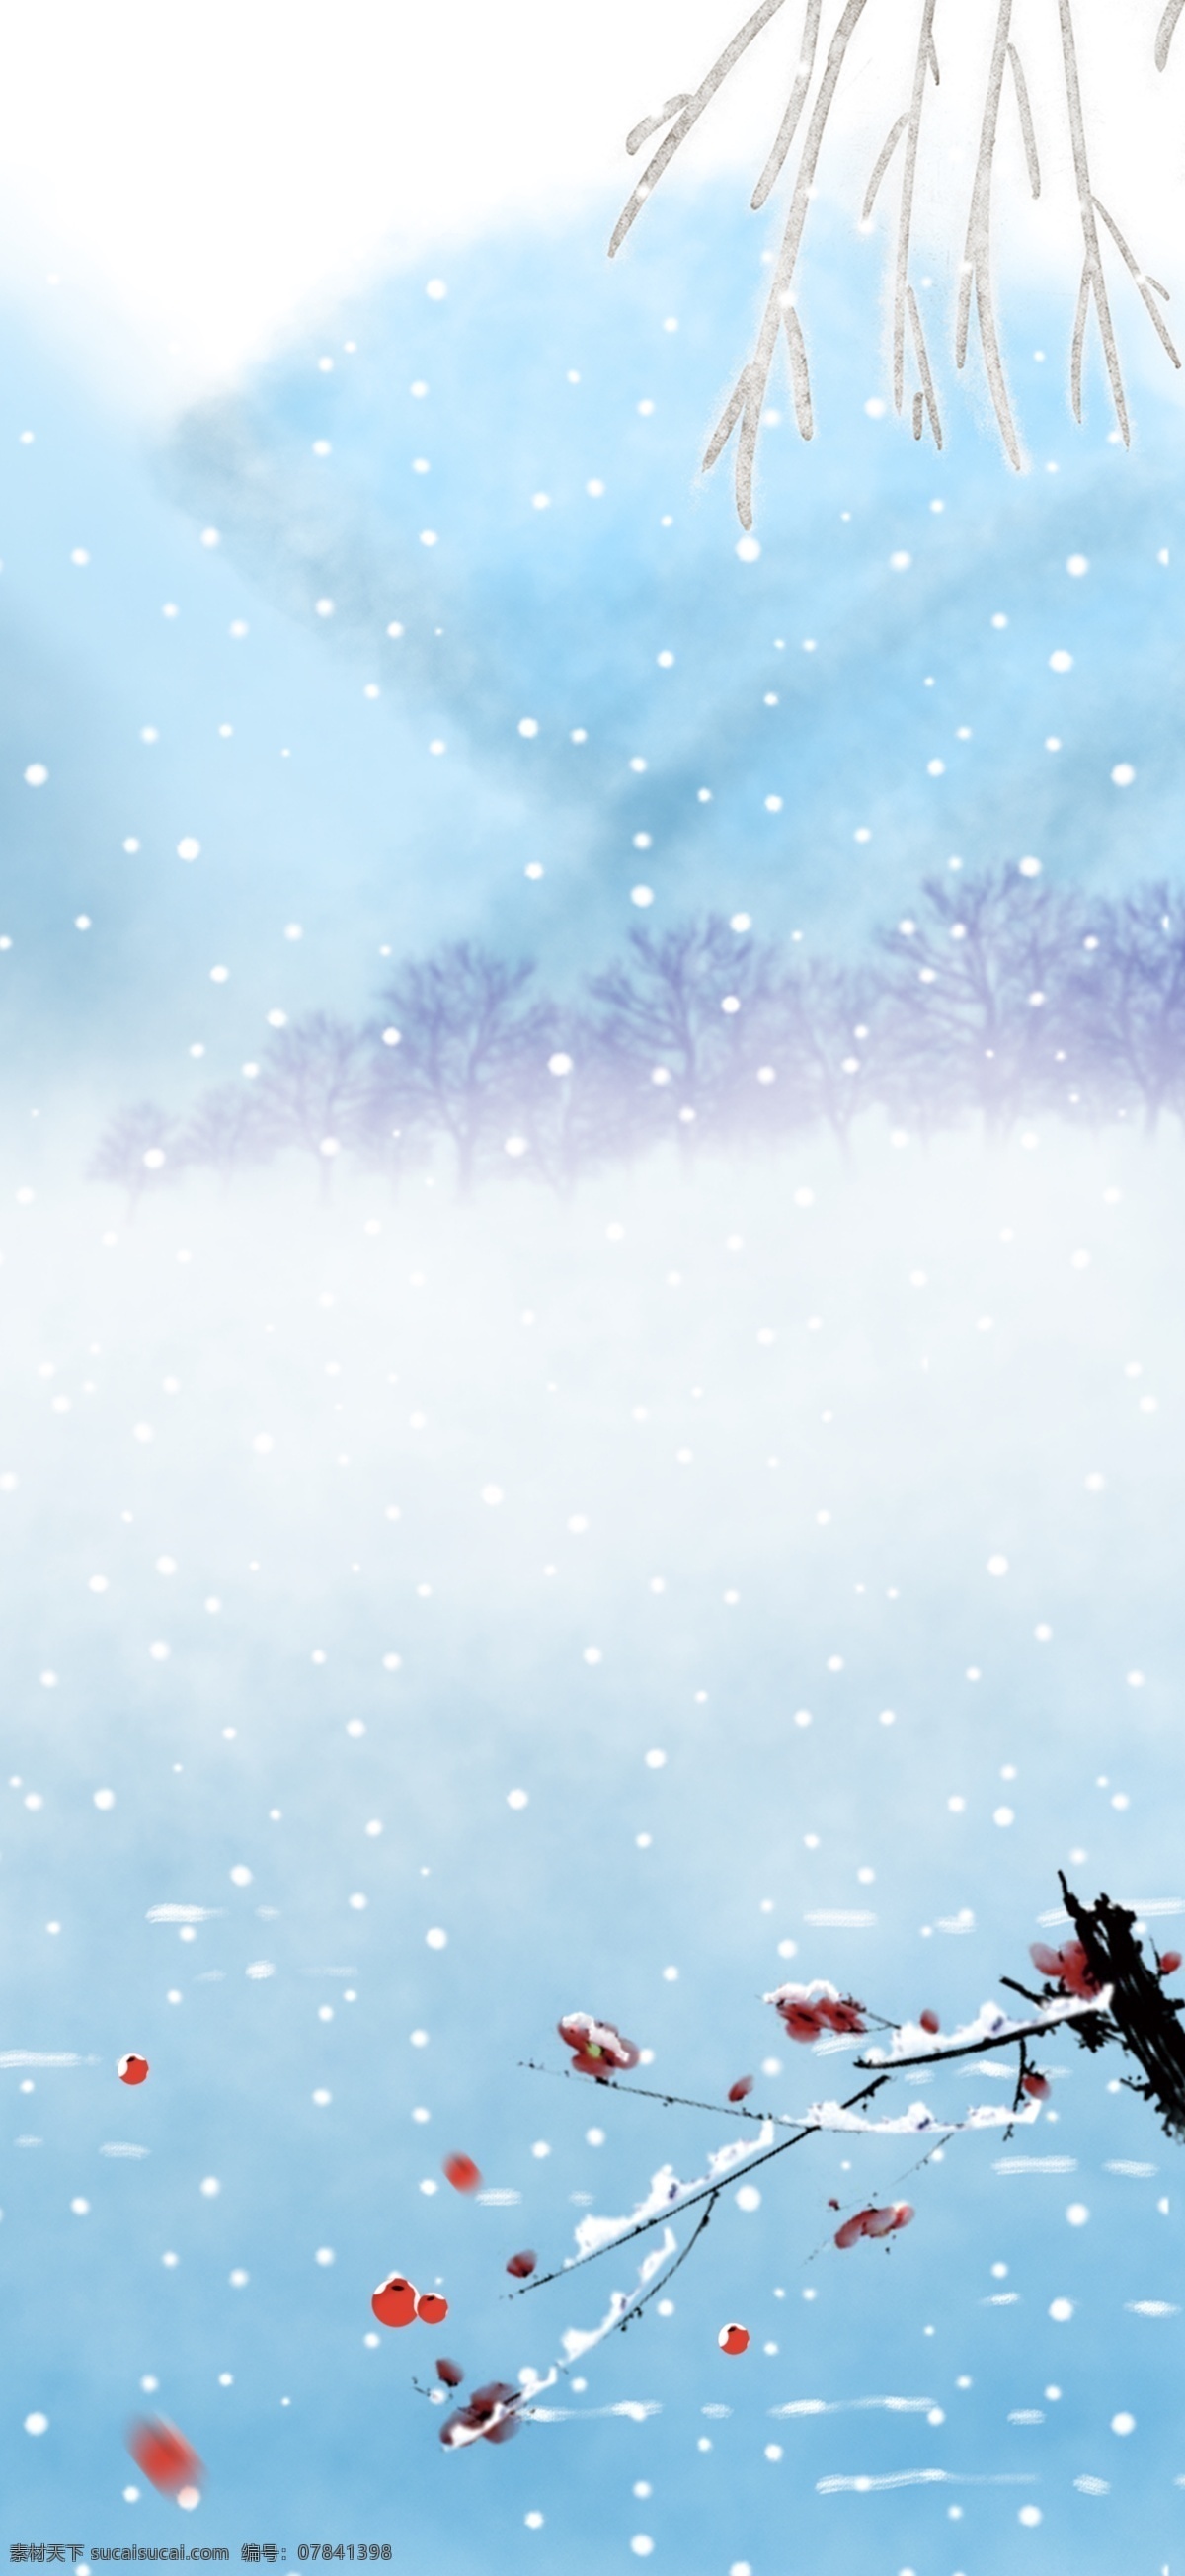 唯美 冬季 雪地 雪景 插画 背景 简约蓝色 冬至背景 下雪 冬天 冬至节气 传统节气 24节气冬天